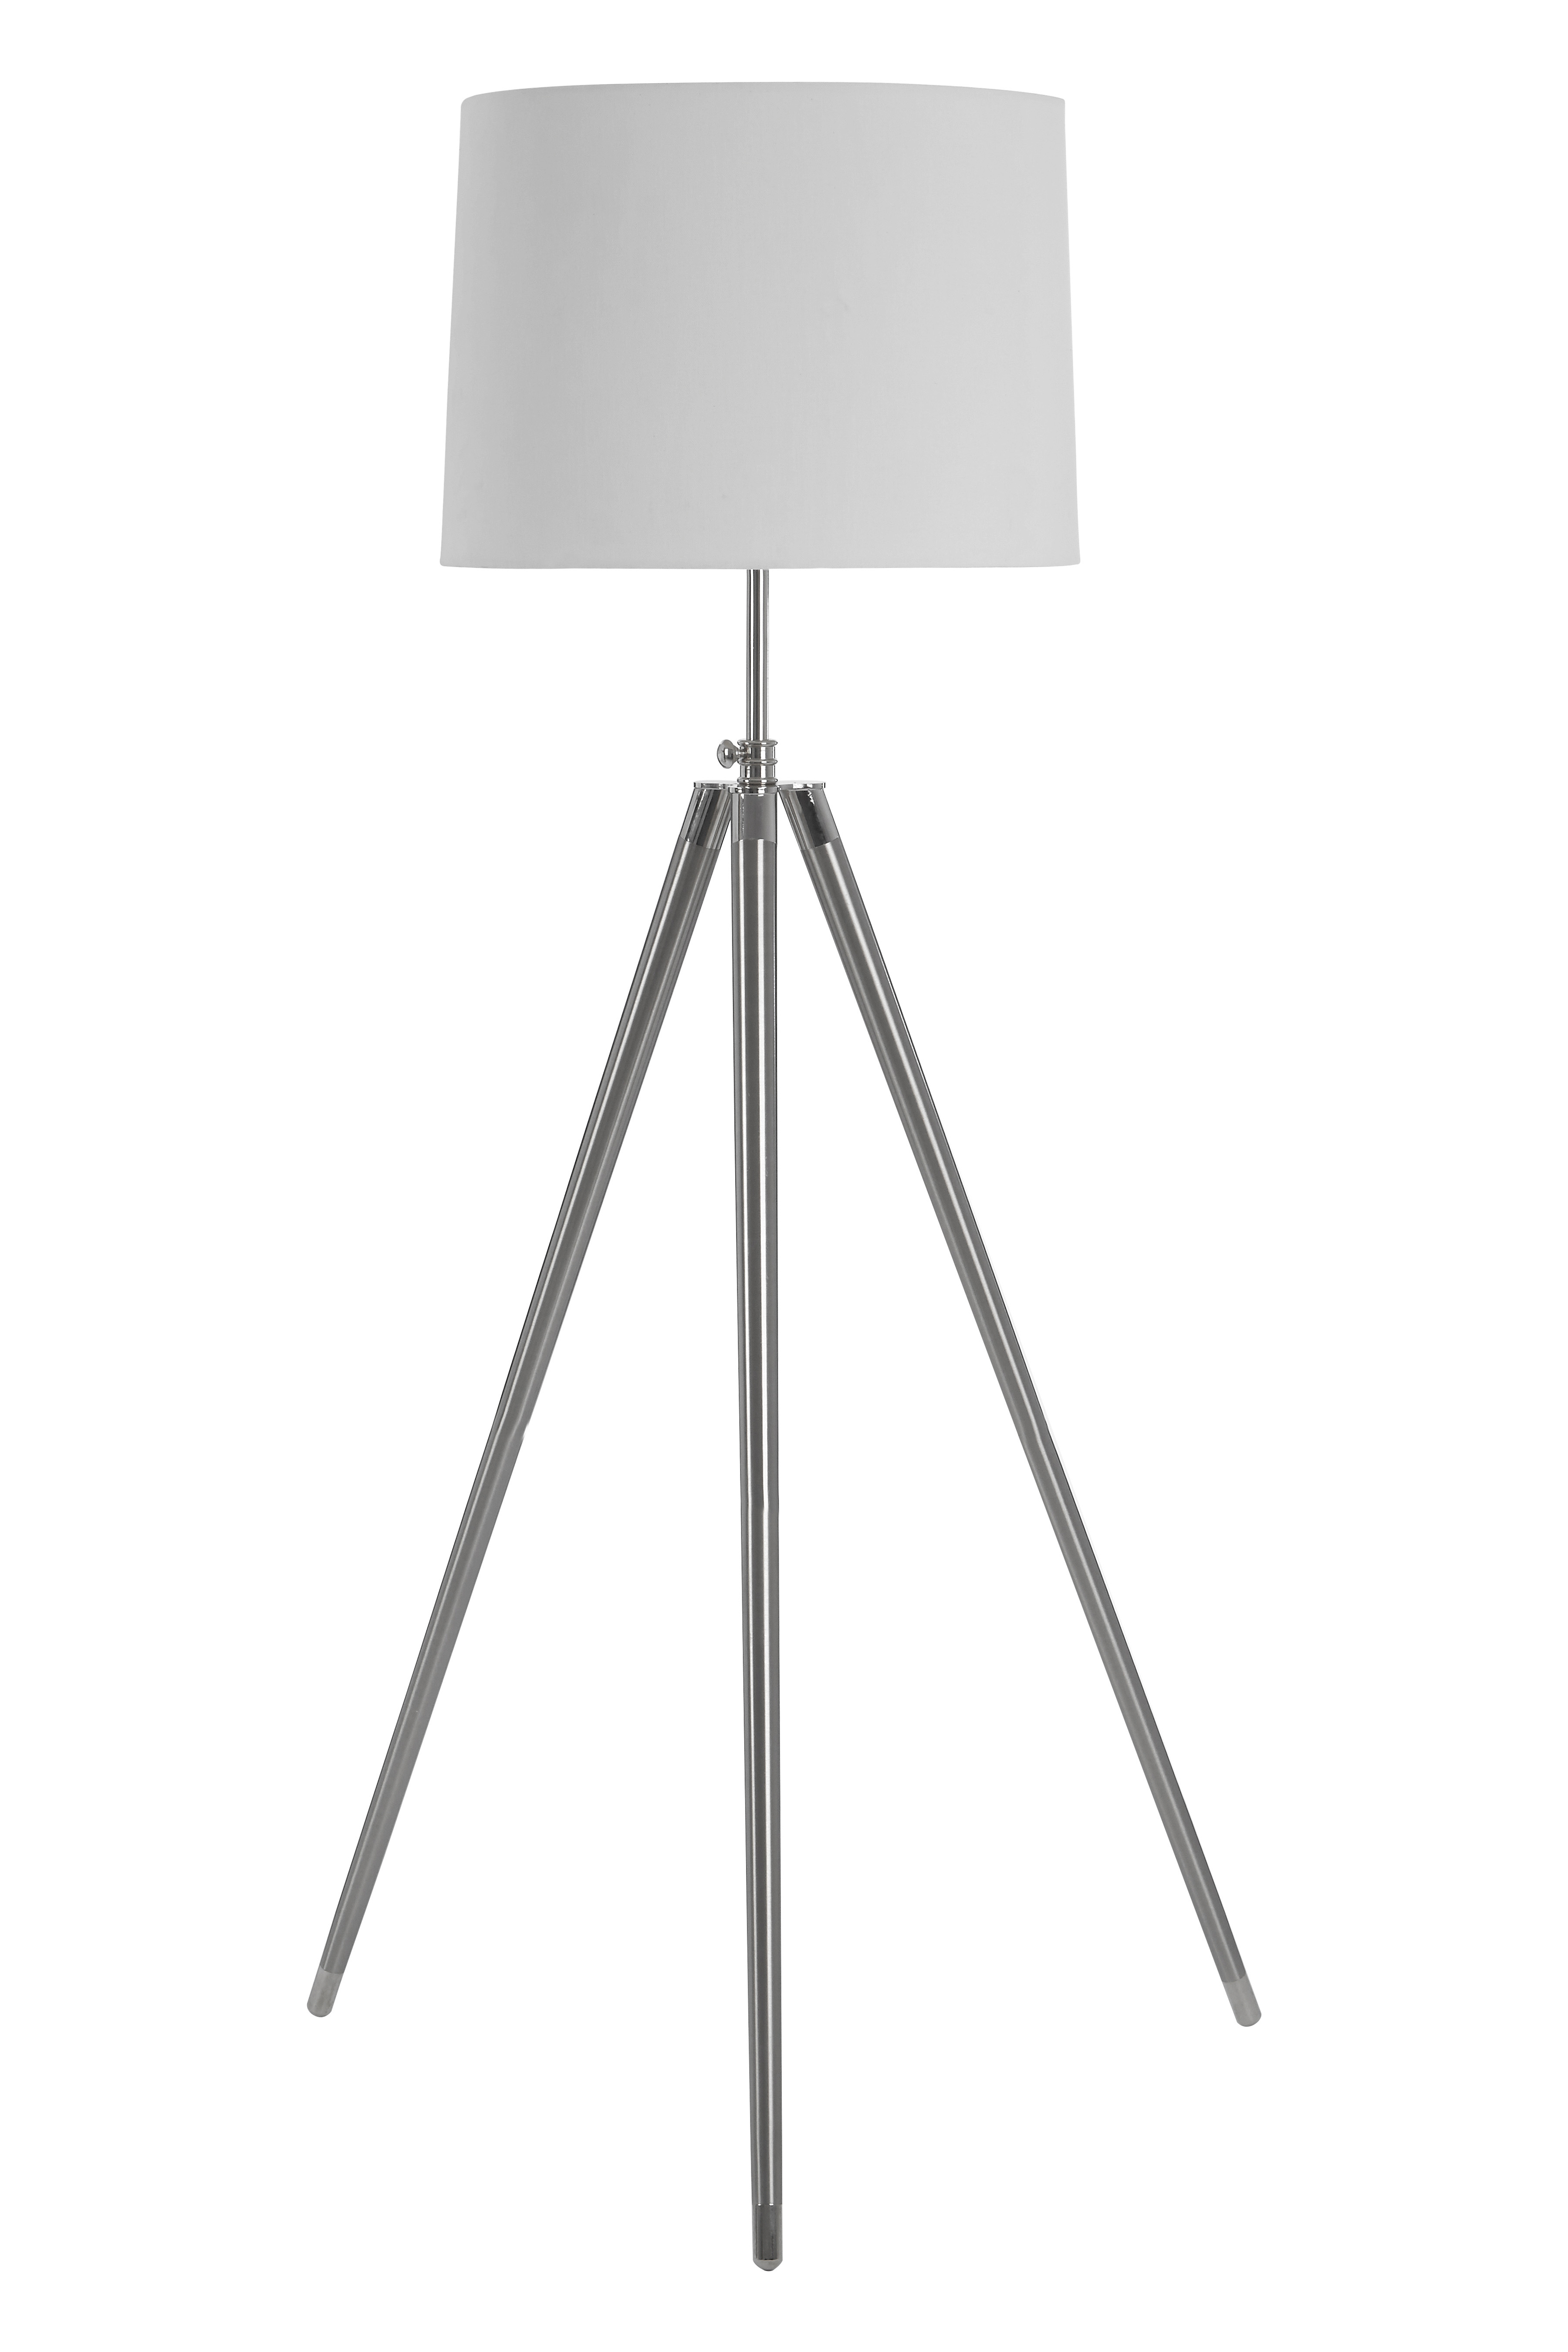 Unique Floor Lamp With Uk Plug in dimensions 3600 X 5400